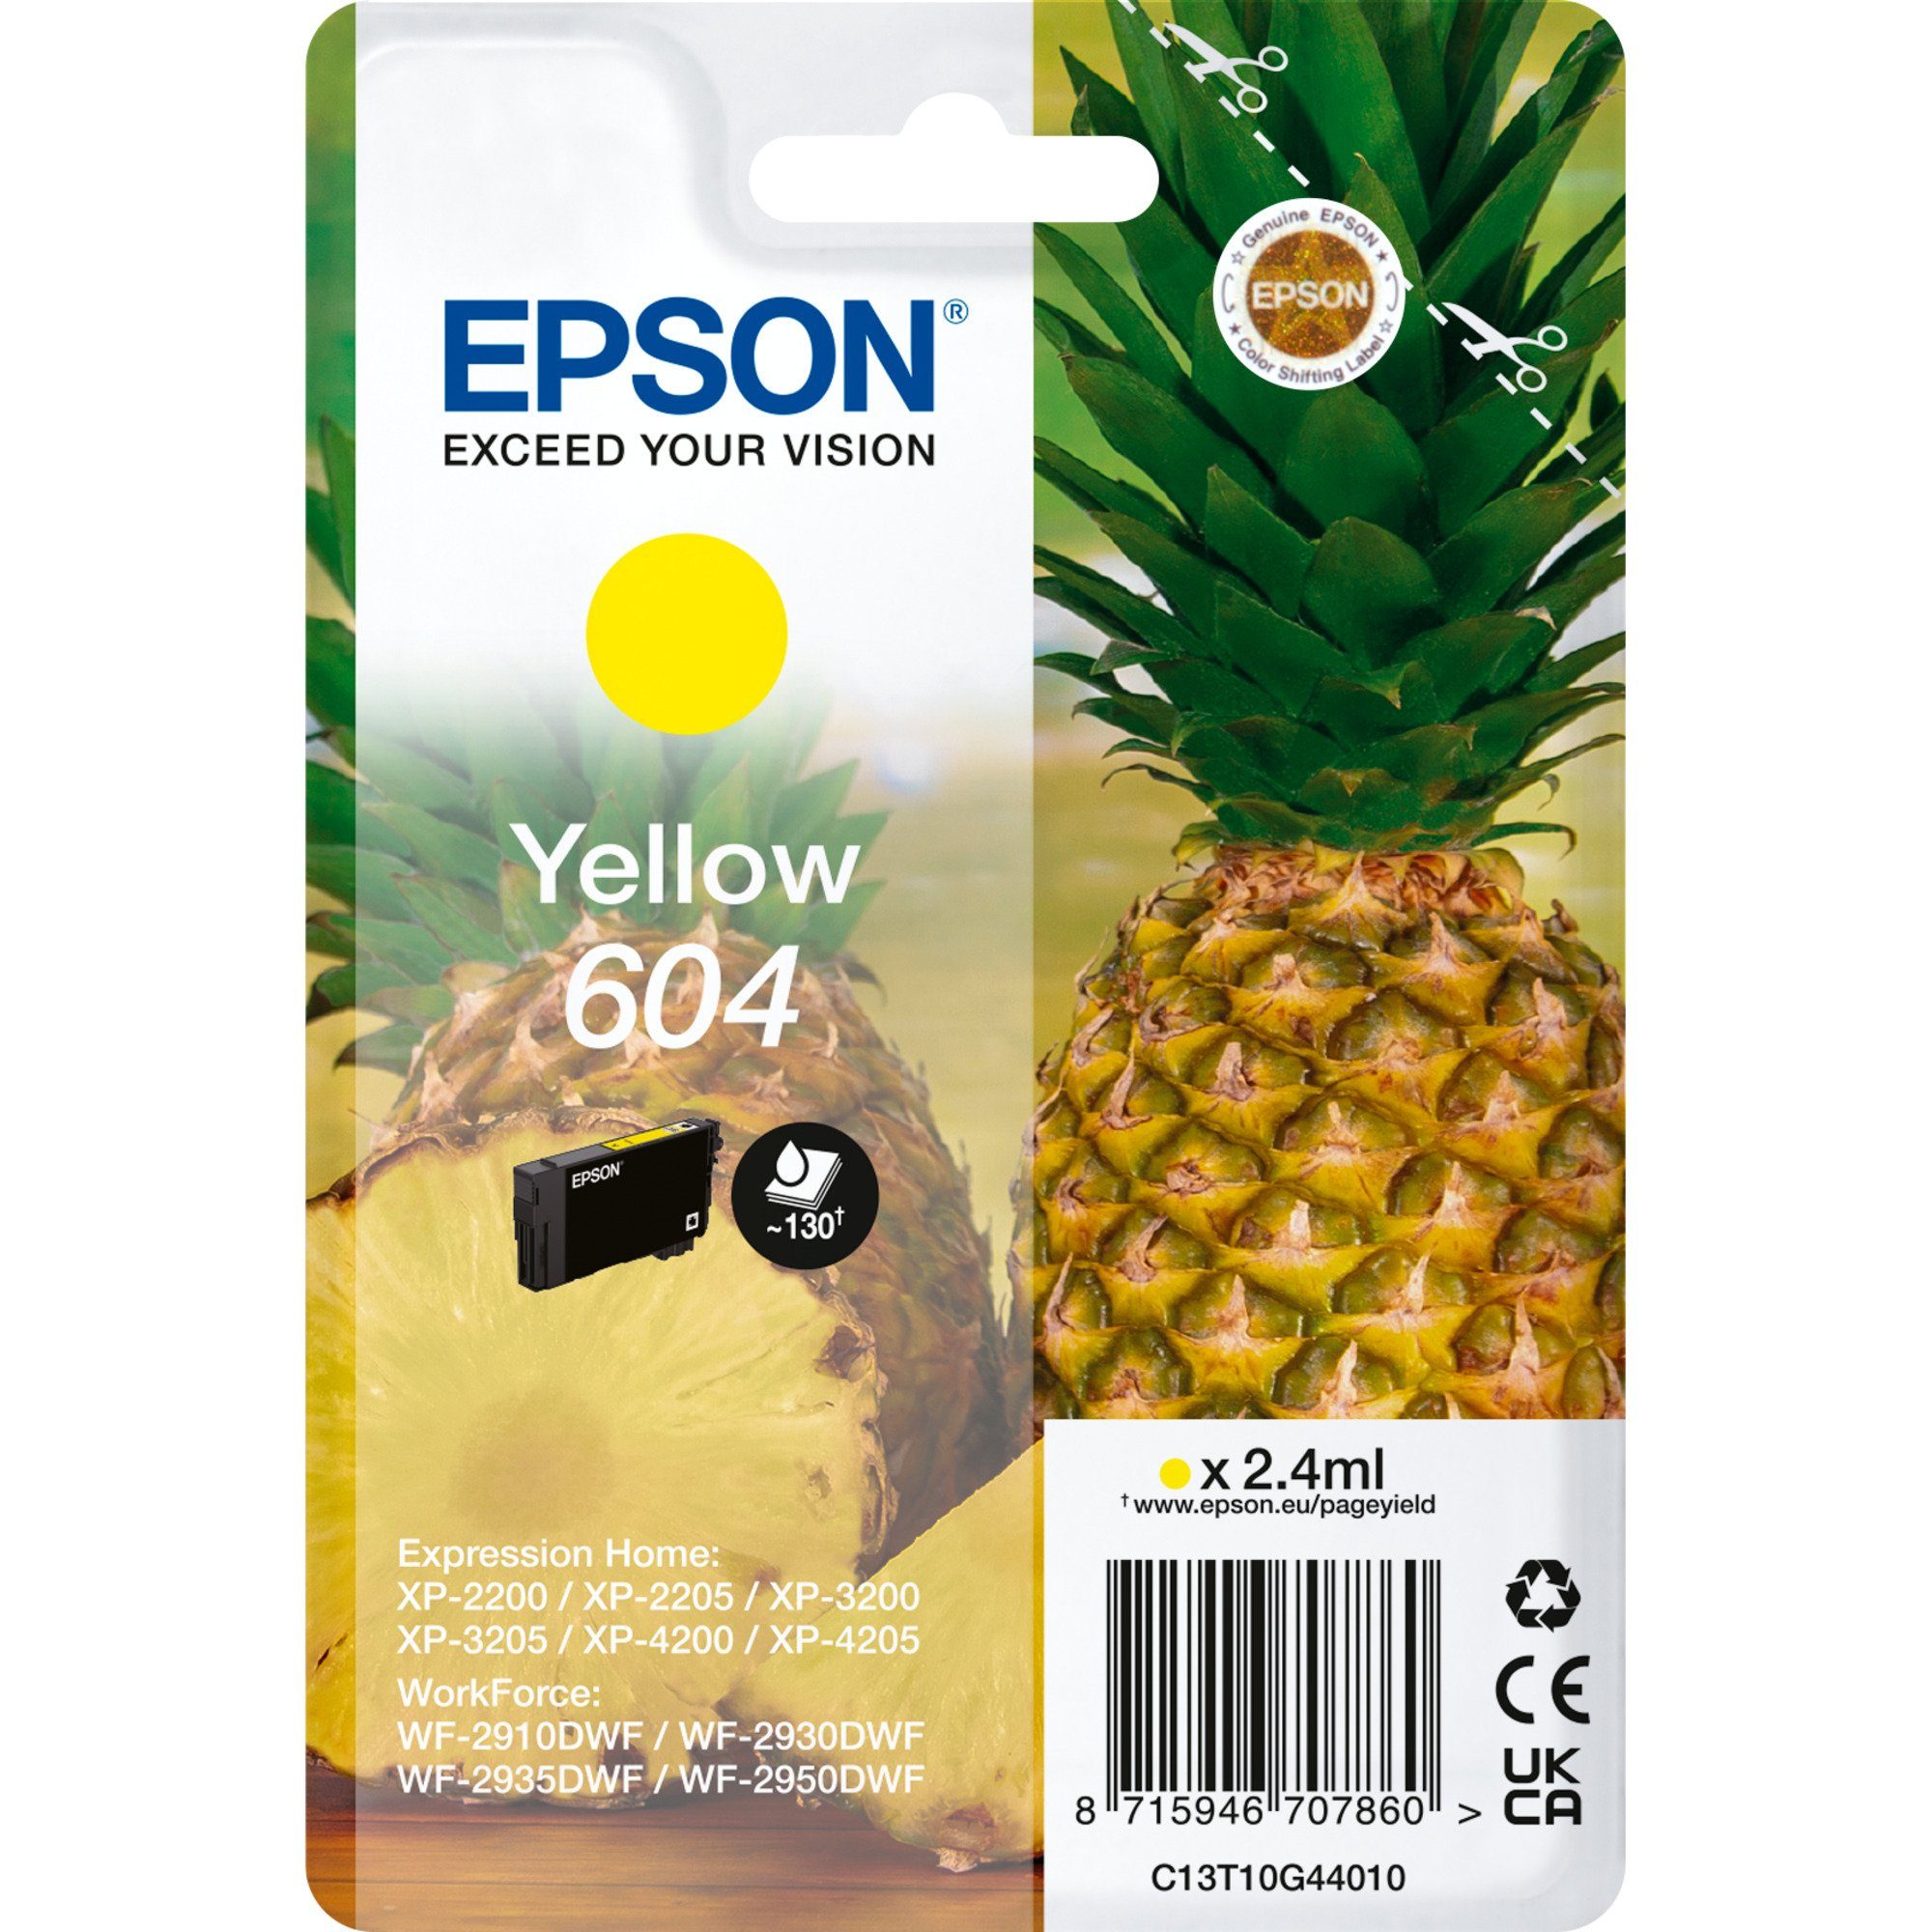 Epson Epson Tinte gelb 604 (C13T10G44010) Tintenpatrone